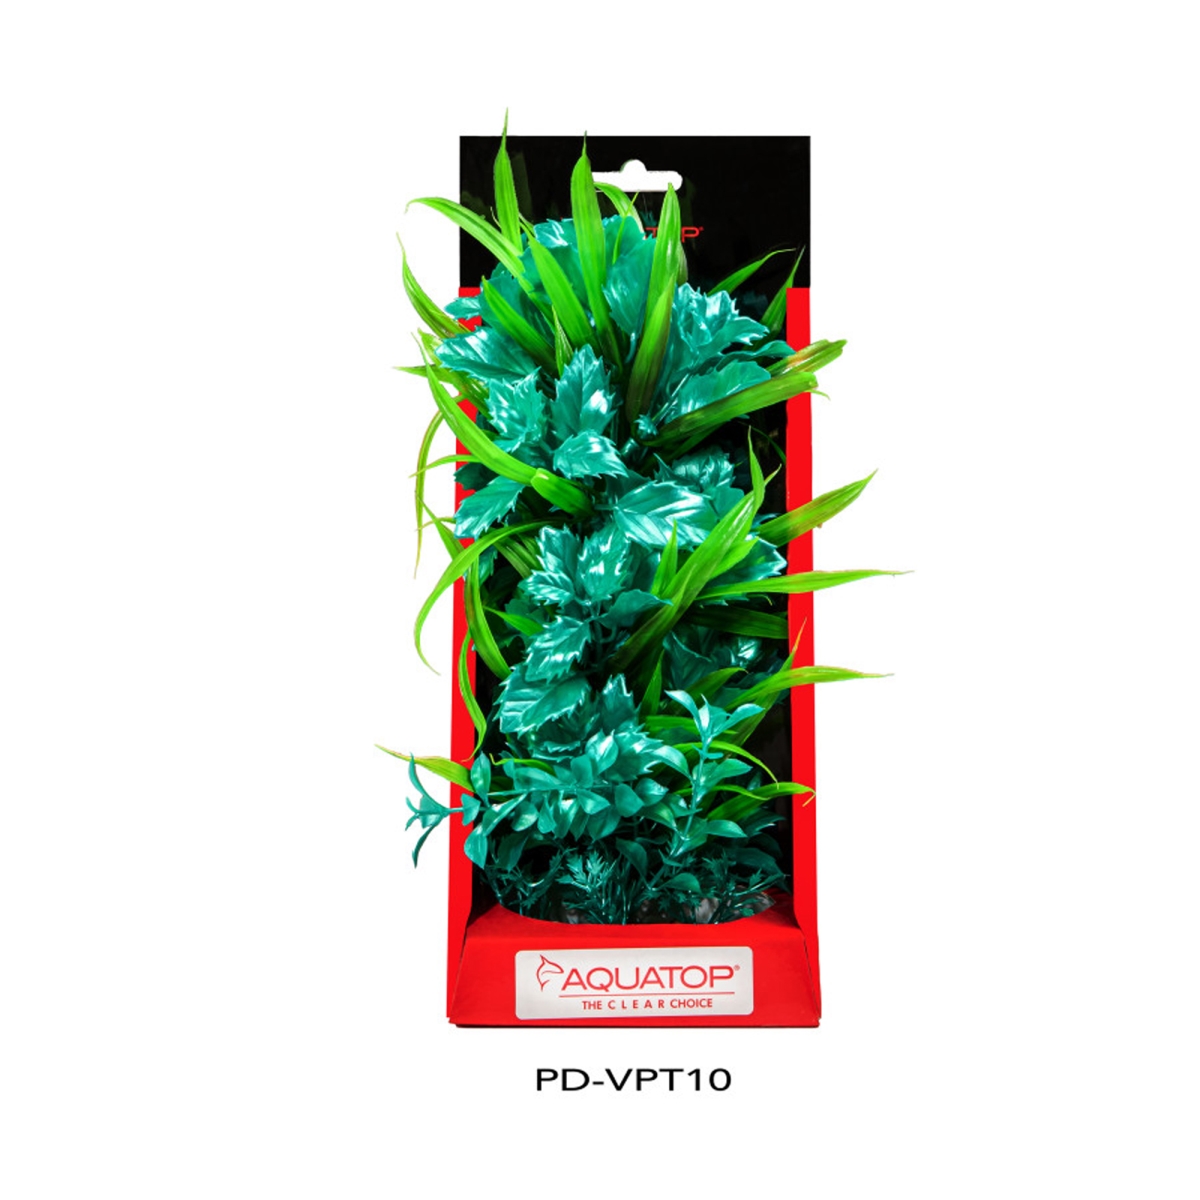 Picture of Aquatop 810074880138 Vibrant Aquarium Passion Plant - Turquoise - 10 in.